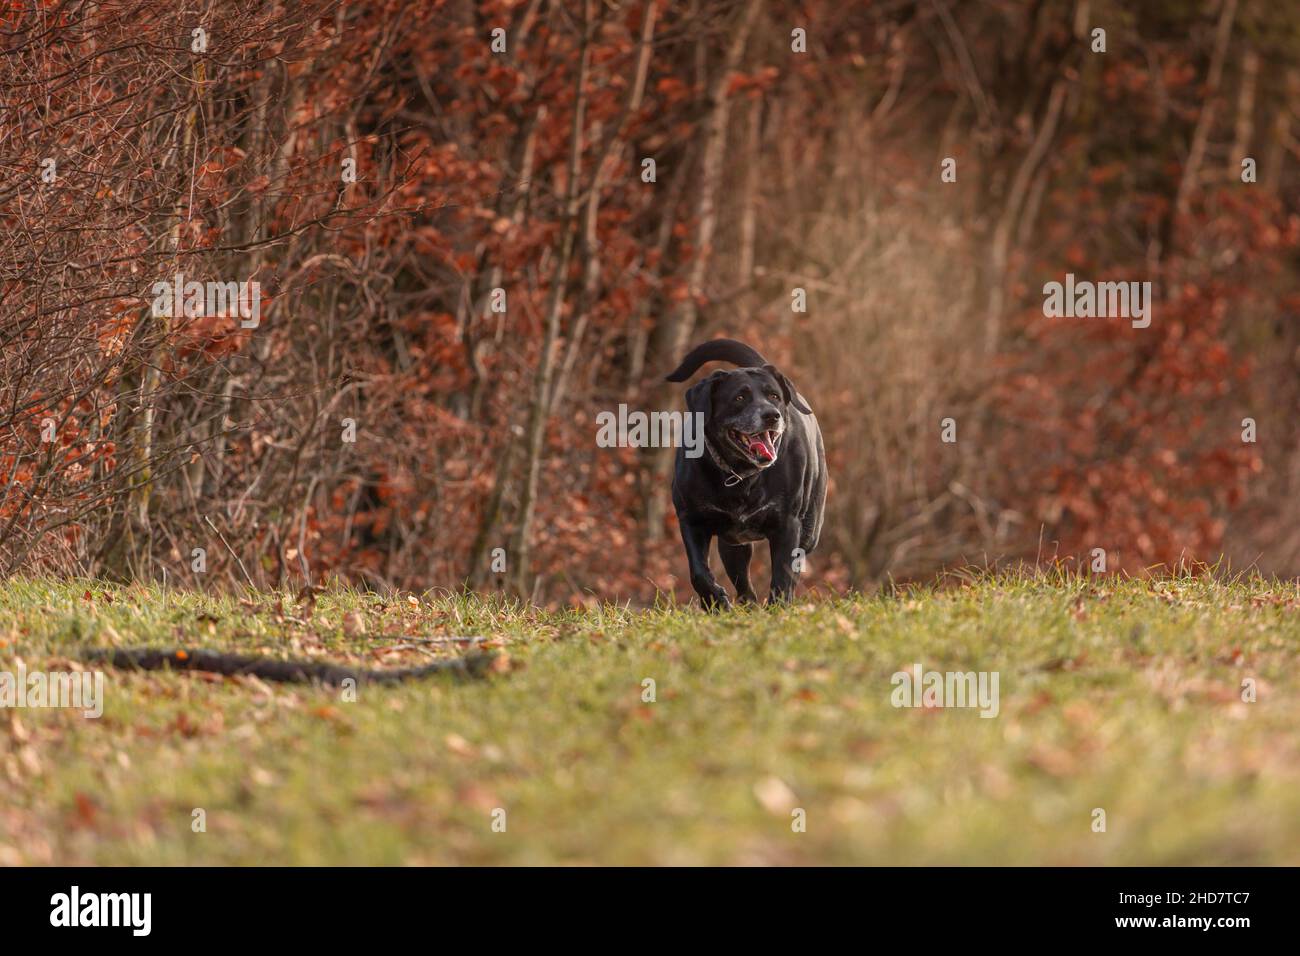 Porträt eines älteren labrador Retriever Hundes, der glücklich über eine herbstliche Wiese läuft Stockfoto